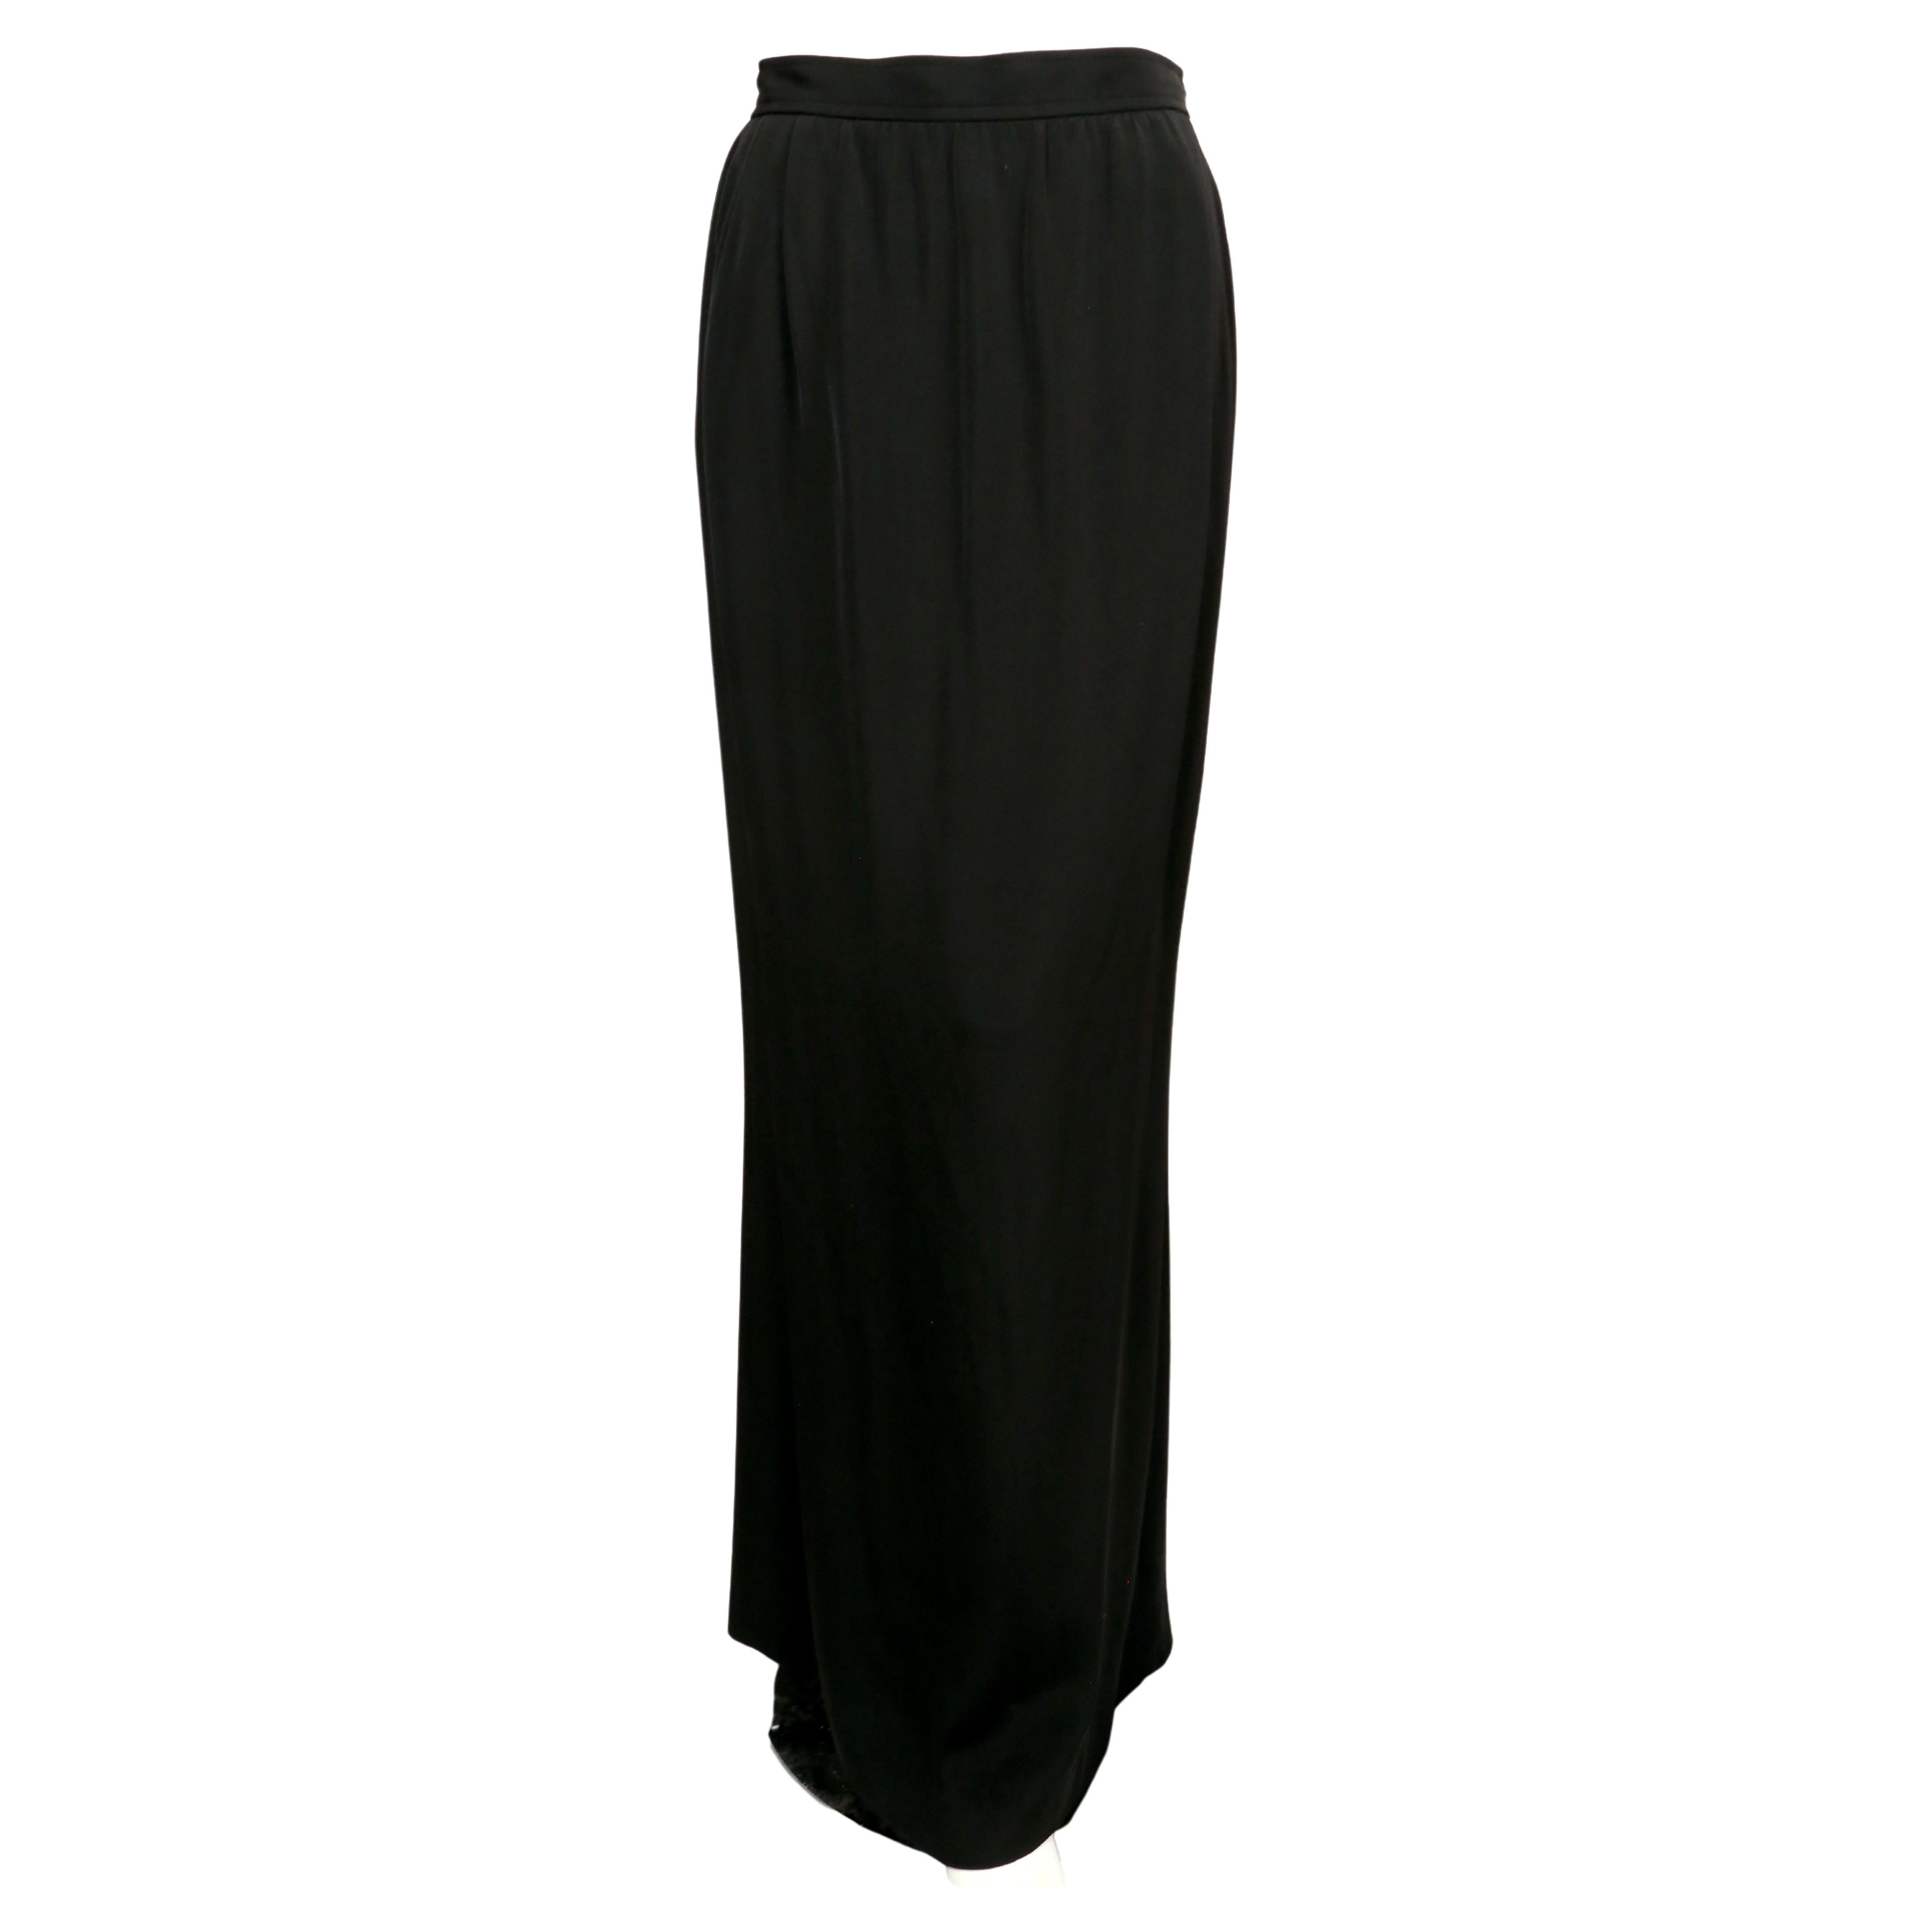 Jupe longue en crêpe noir de jais avec bouton en strass au dos, créée par Yves Saint Laurent au début des années 1980. Labellisé en taille 42, il est cependant plus petit. Mesures approximatives : taille 28